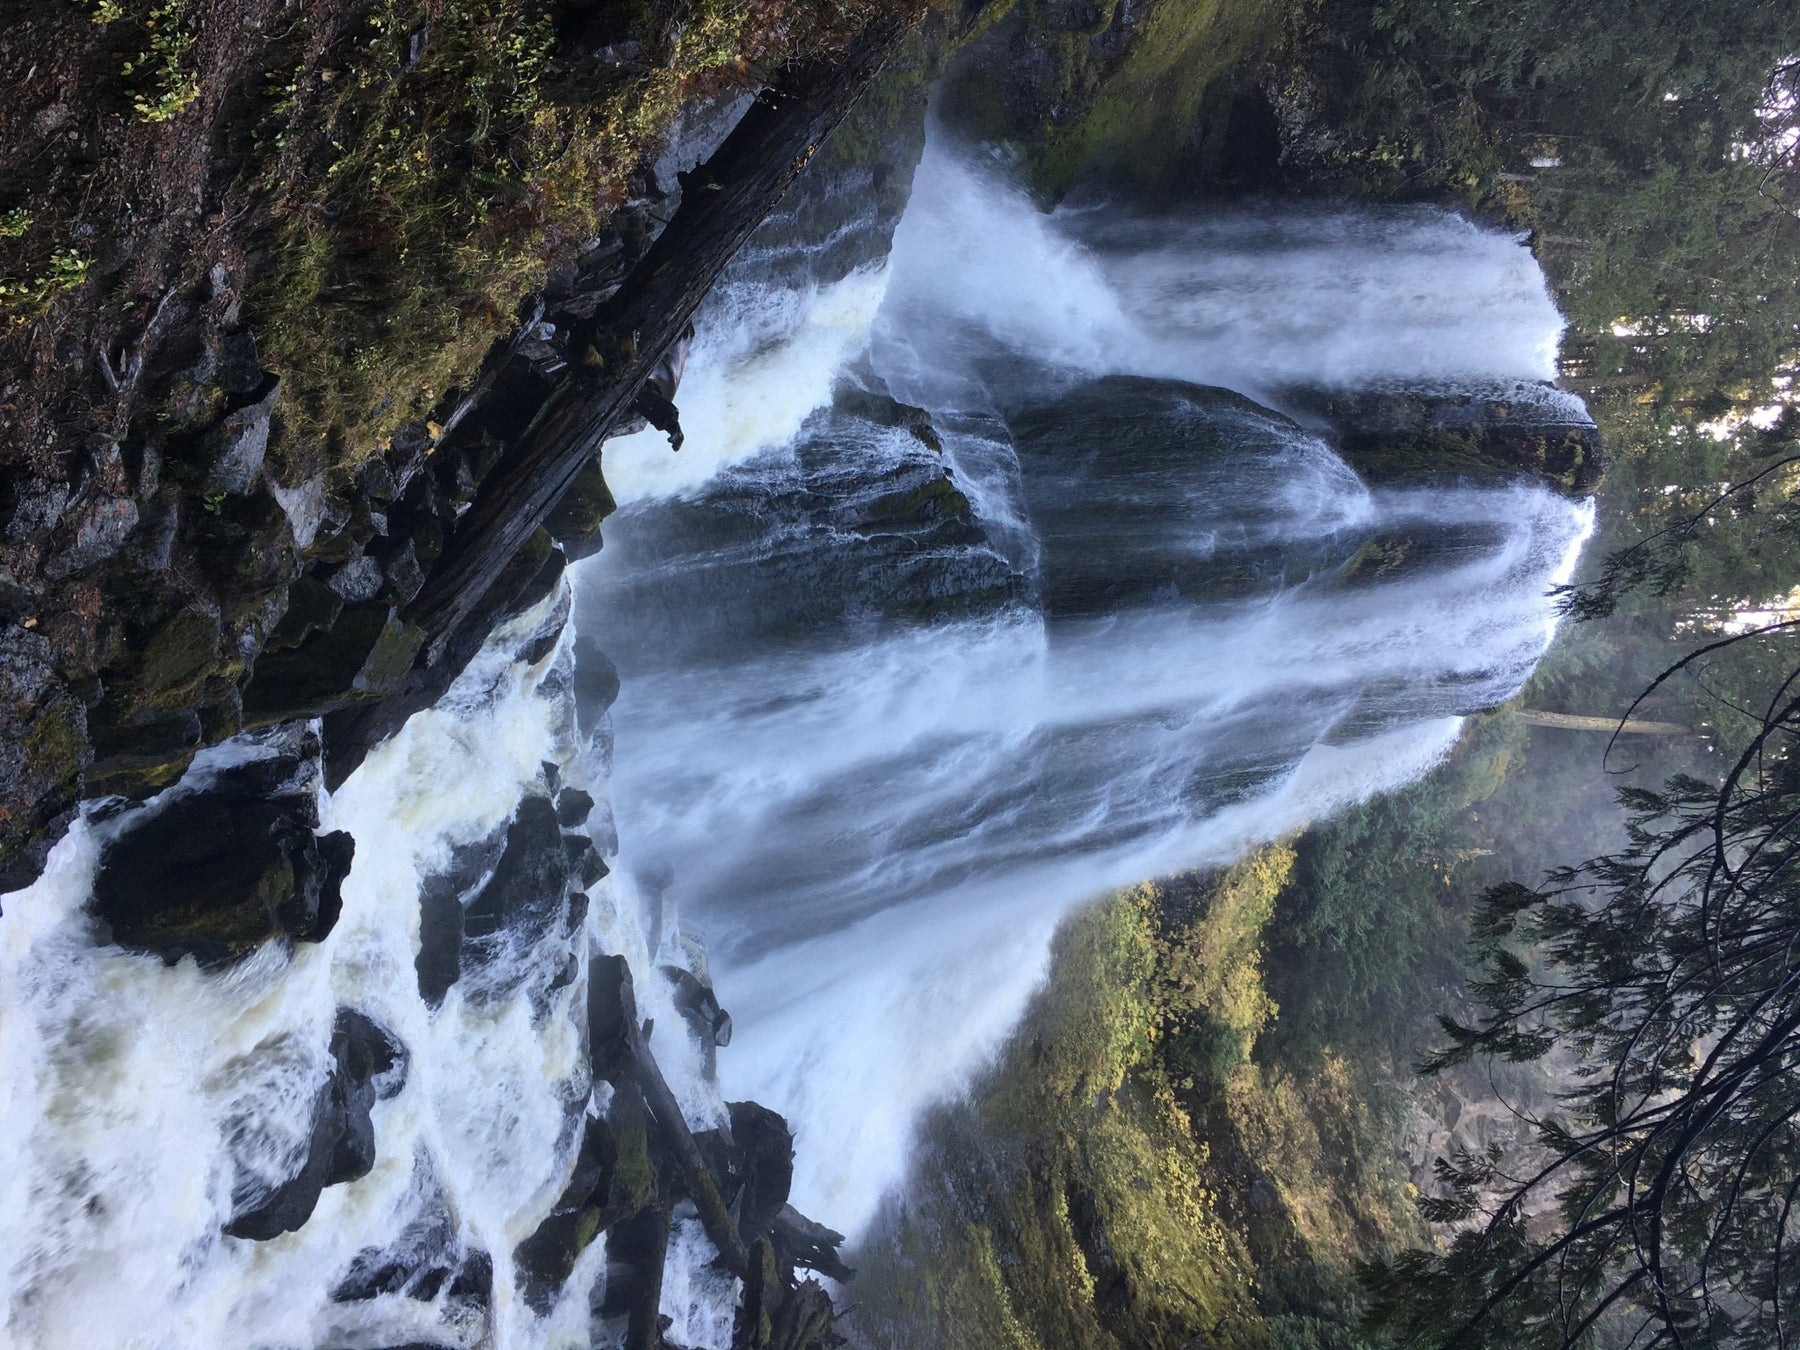 Trip Report: Falls Creek Falls - Next Adventure